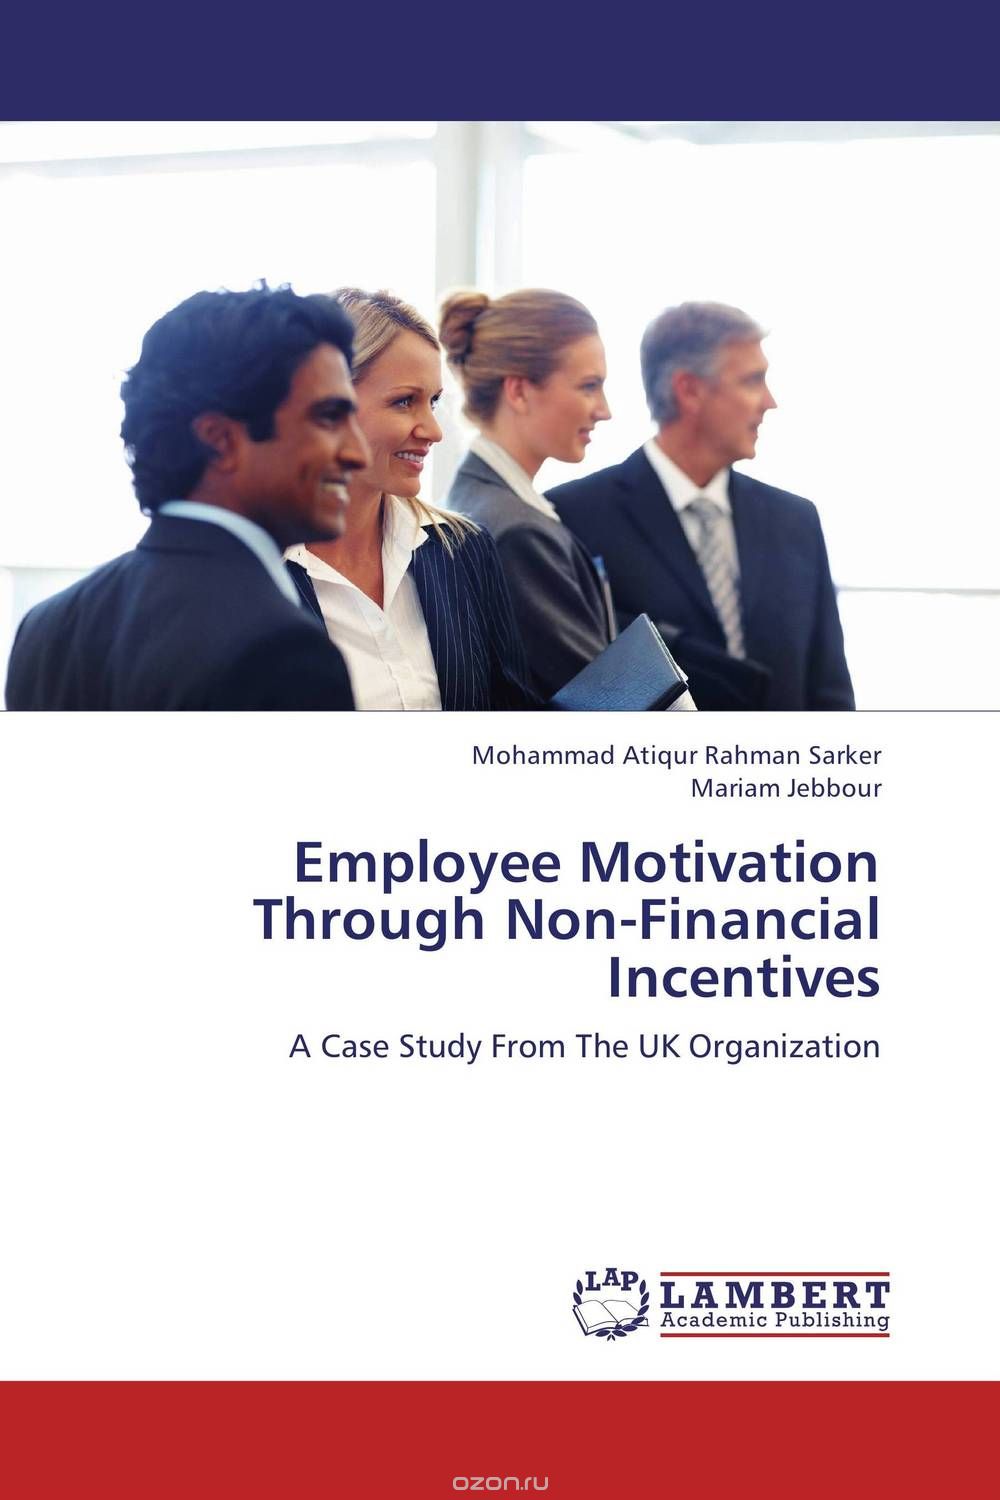 Скачать книгу "Employee Motivation Through Non-Financial Incentives"